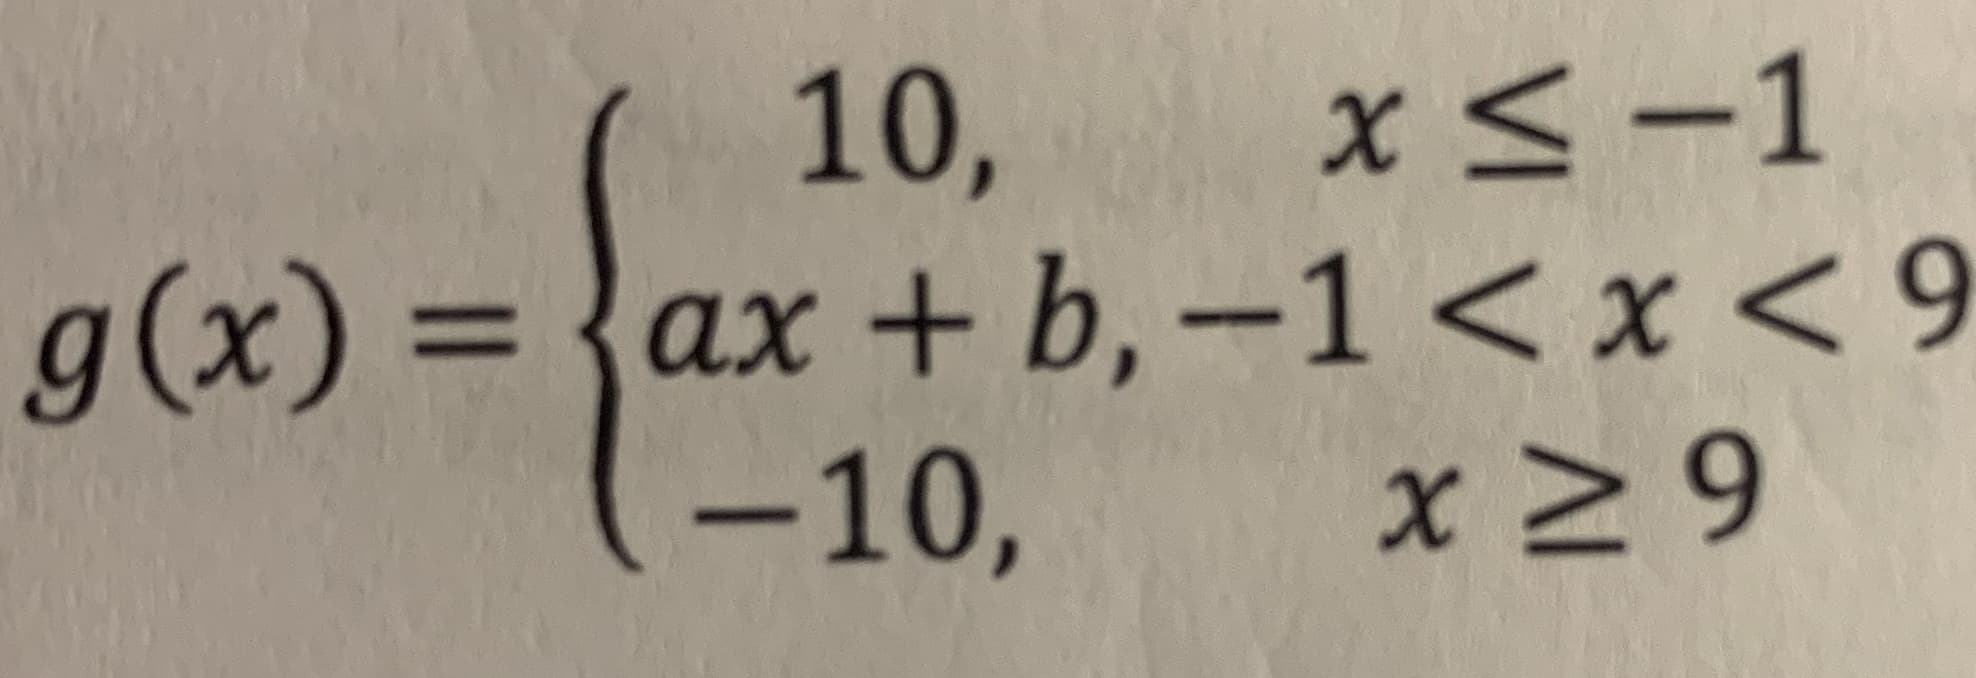 10,
g(x) = {ax + b, -1 < x < 9
-10,
x<-1
%3D
